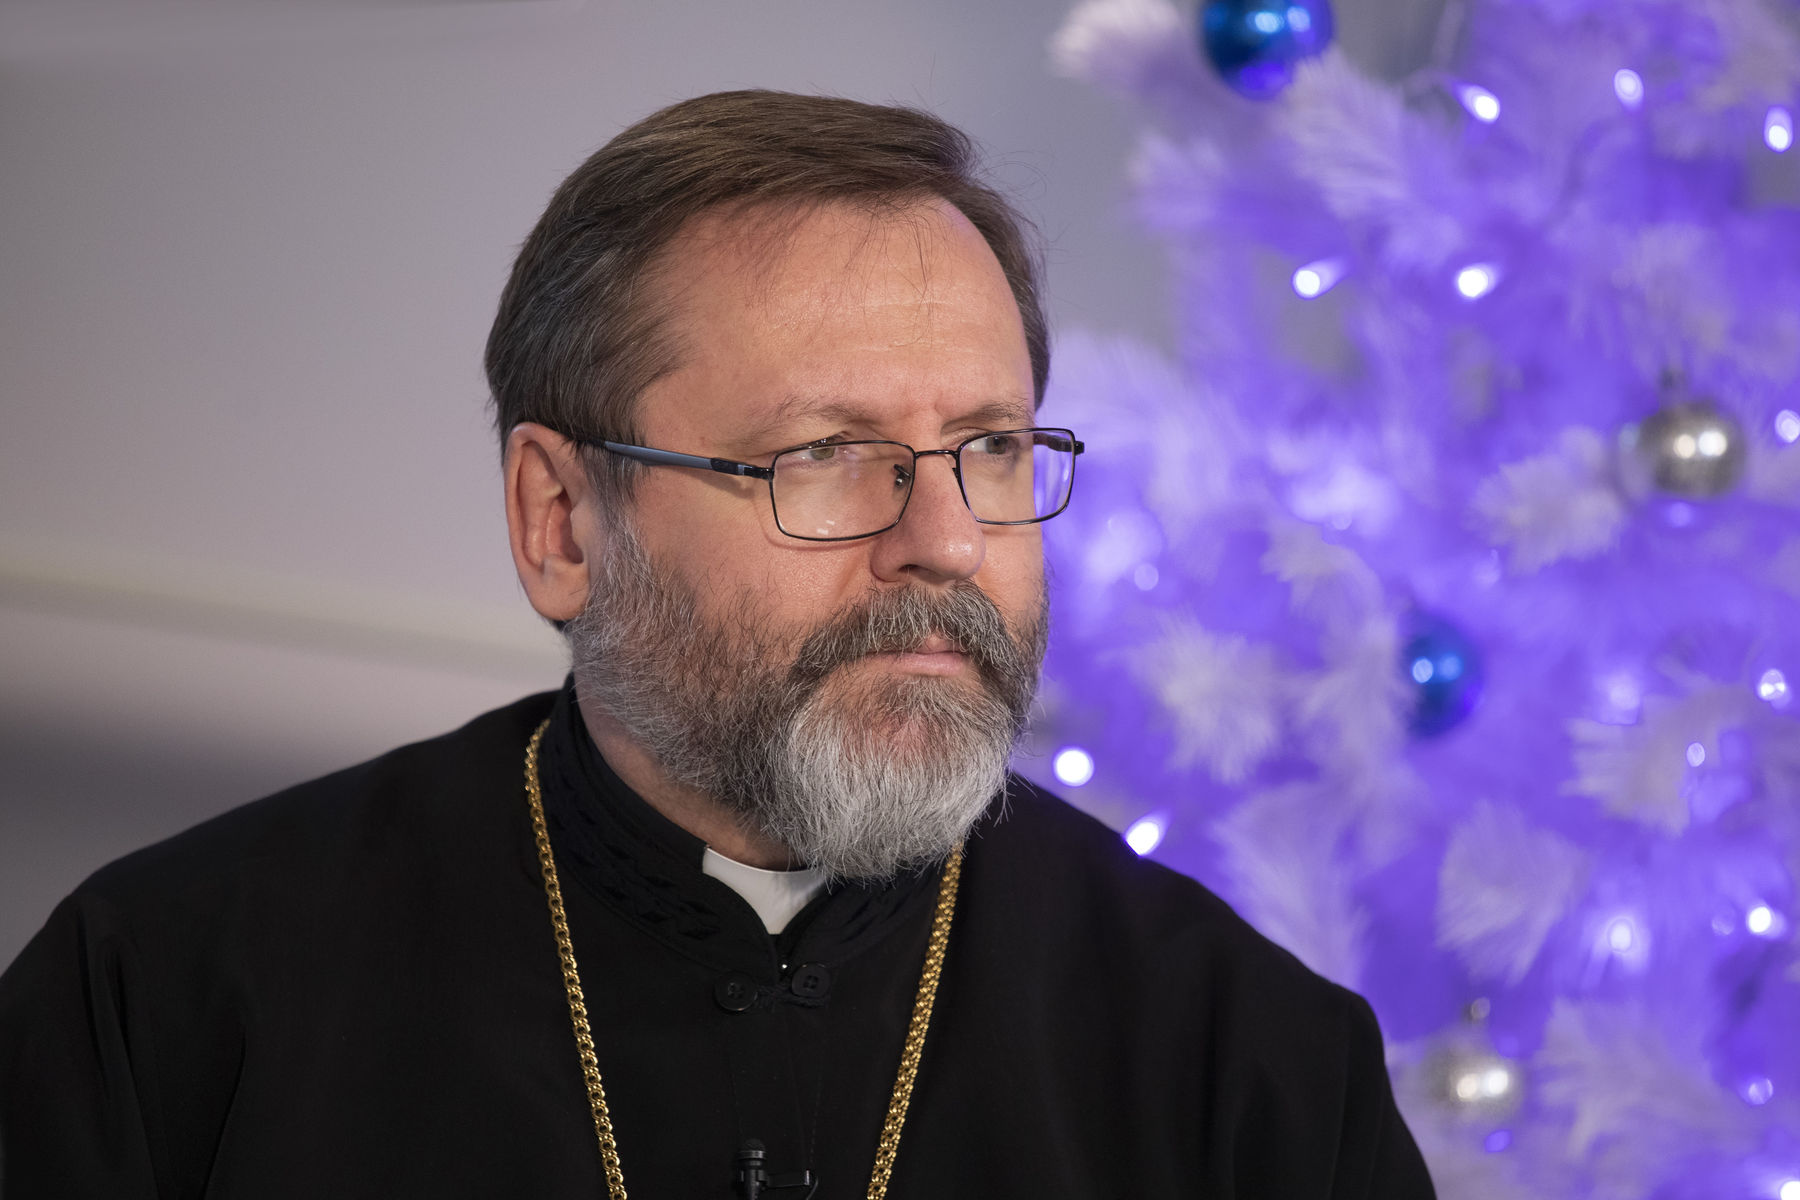 «Бажаю, щоб у новому році ми більше усміхалися, ніж плакали», — Блаженніший Святослав у новорічному привітанні